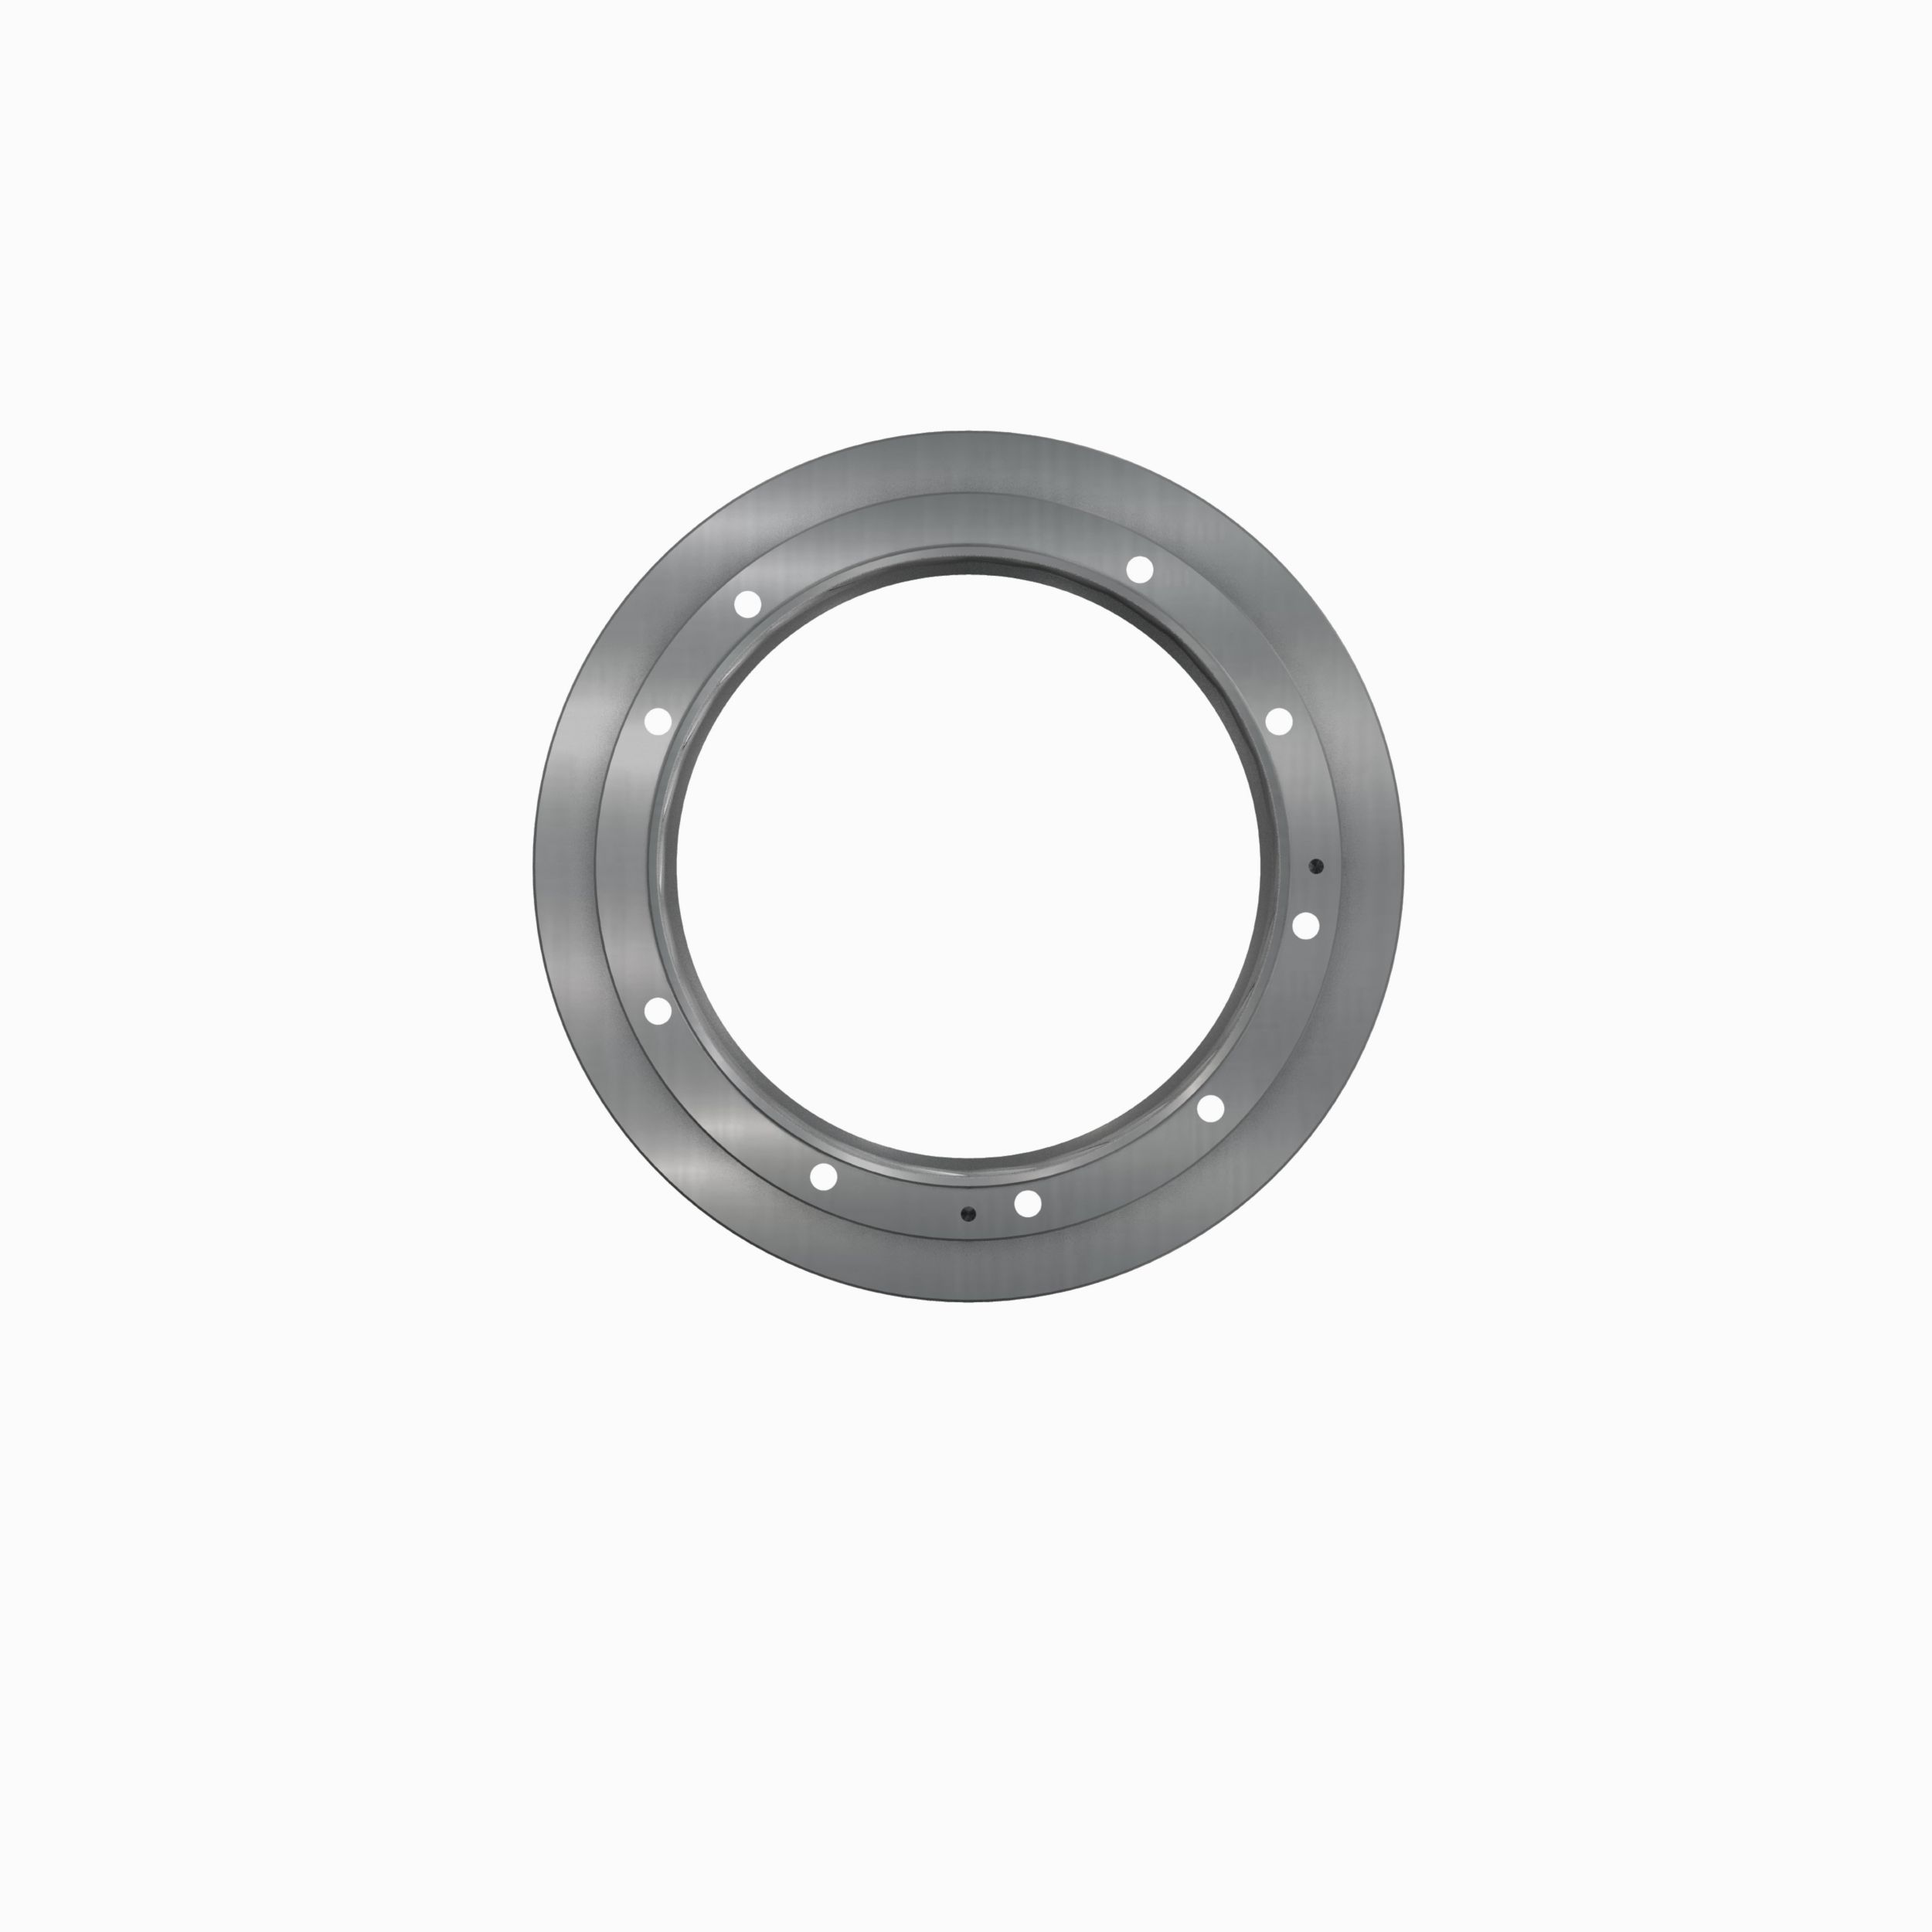 Aluminium Hinten Bremsleitung Clip Schrauben Kit (ALRBLINECLIP10)